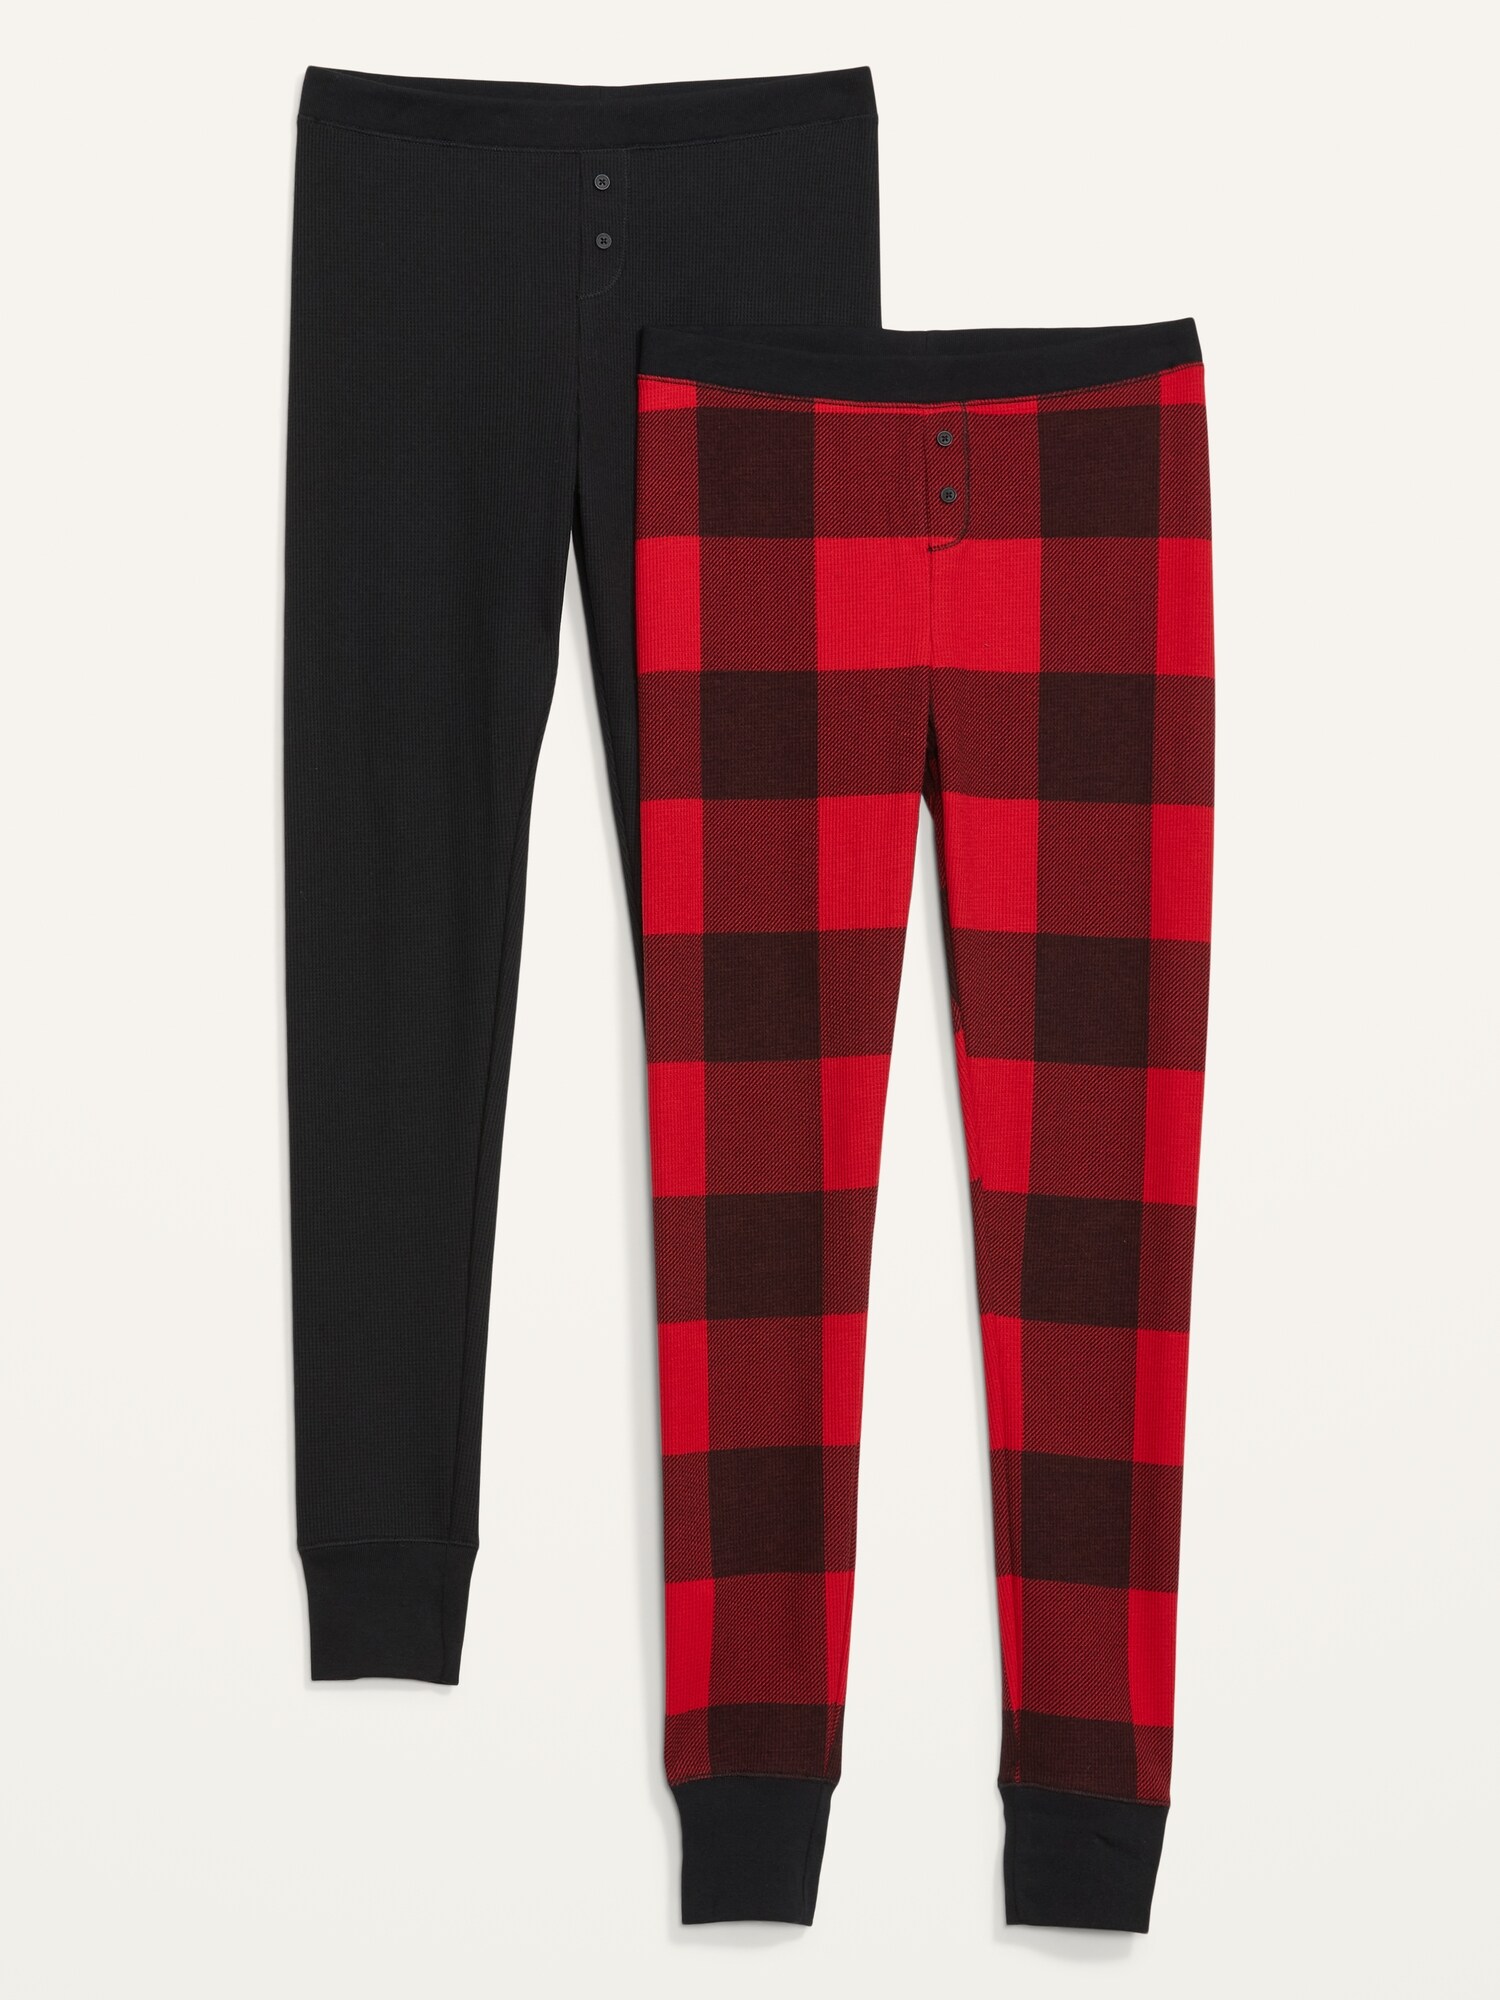 Thermal-Knit Pajama Leggings 2-Pack for Women